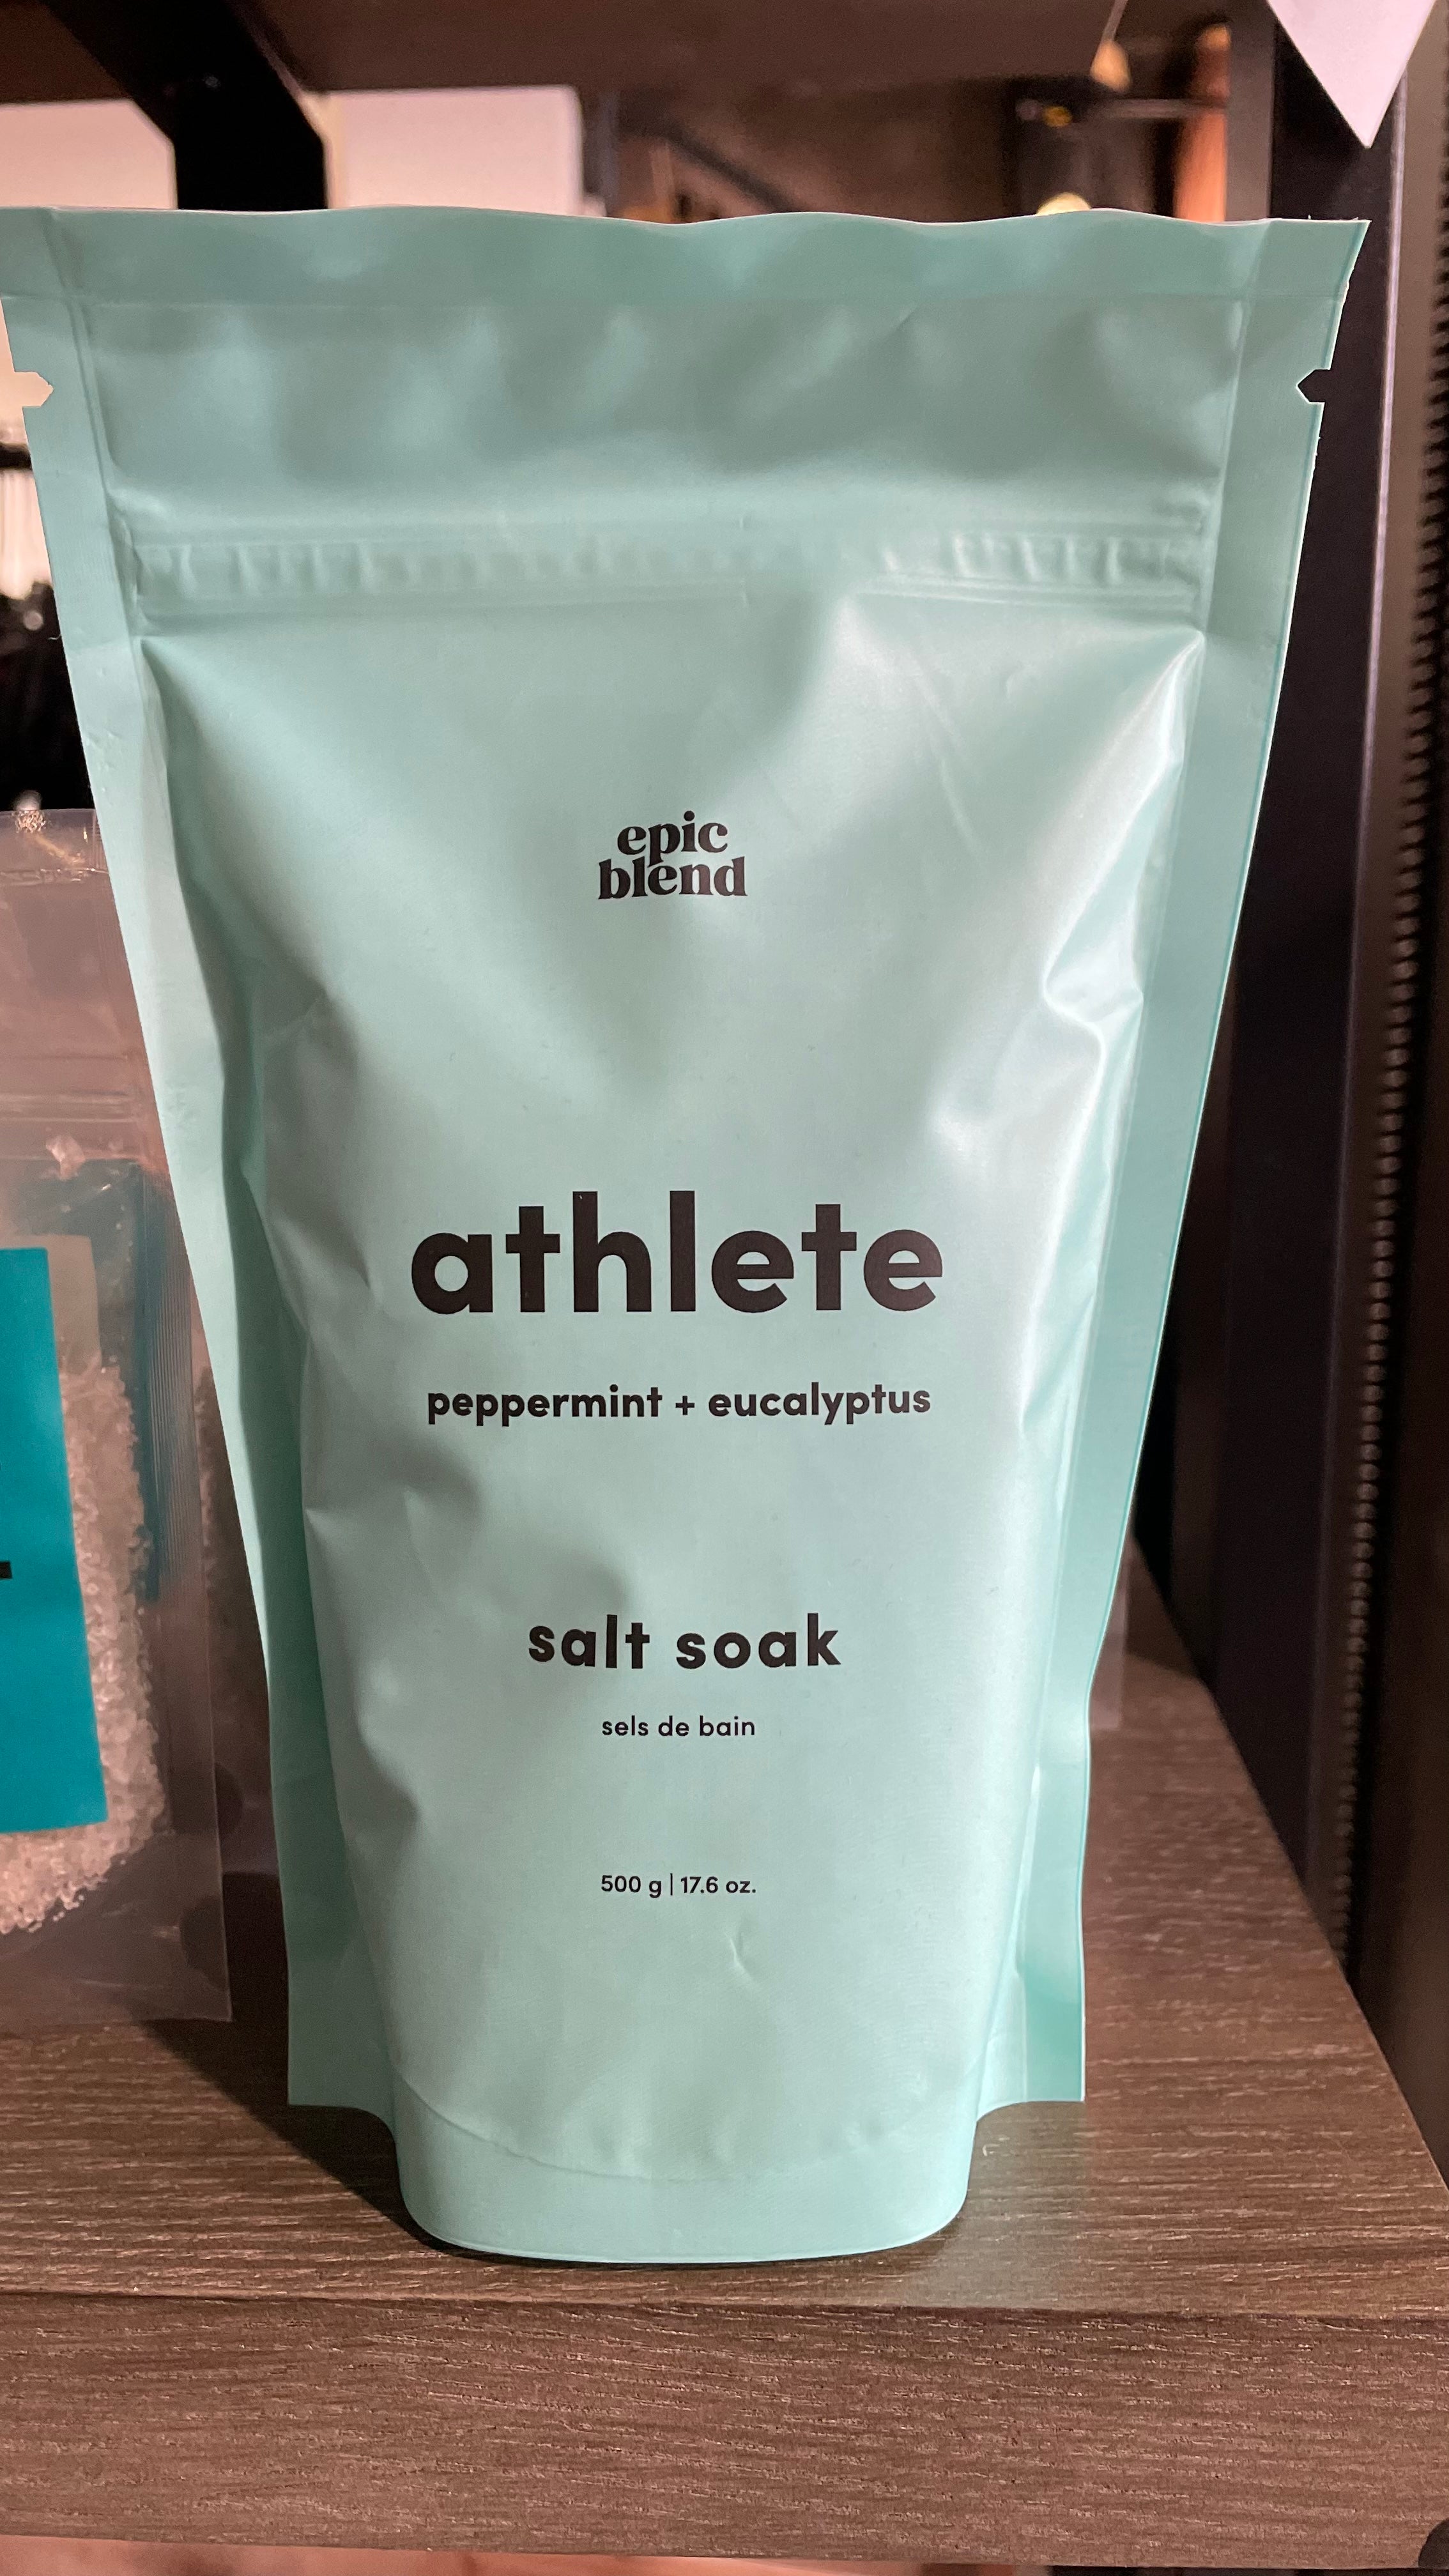 Epic Blend - Athlete Salt Soak 500g/17.6 oz.